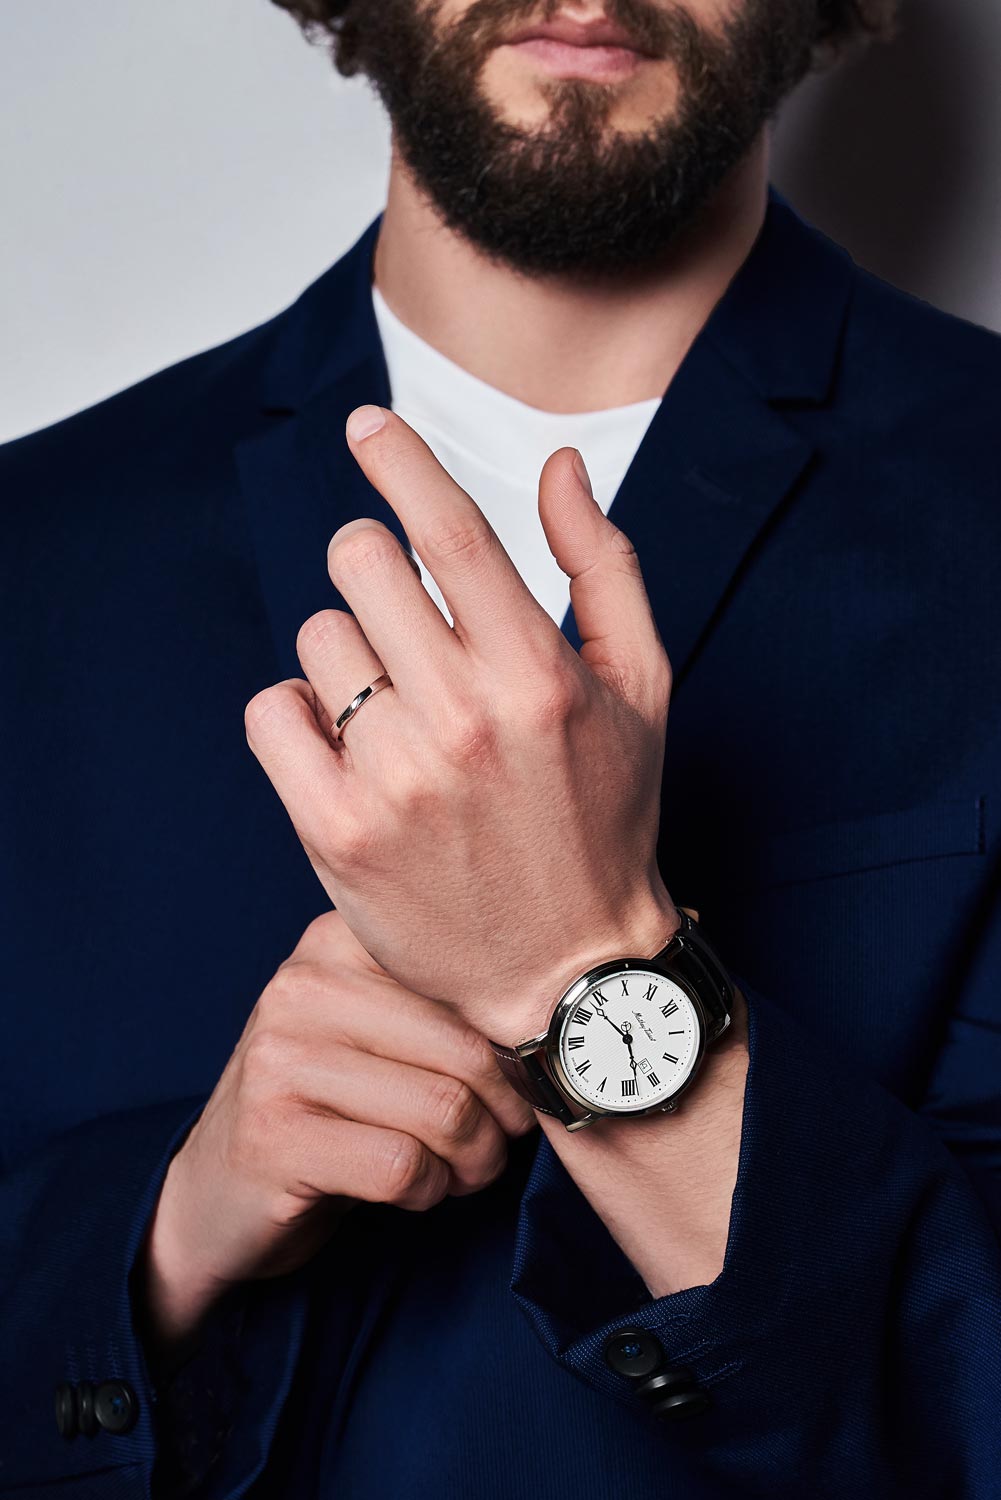 Наручные часы Mathey Tissot Hb611251abr — купить в интернет магазине по лучшей цене